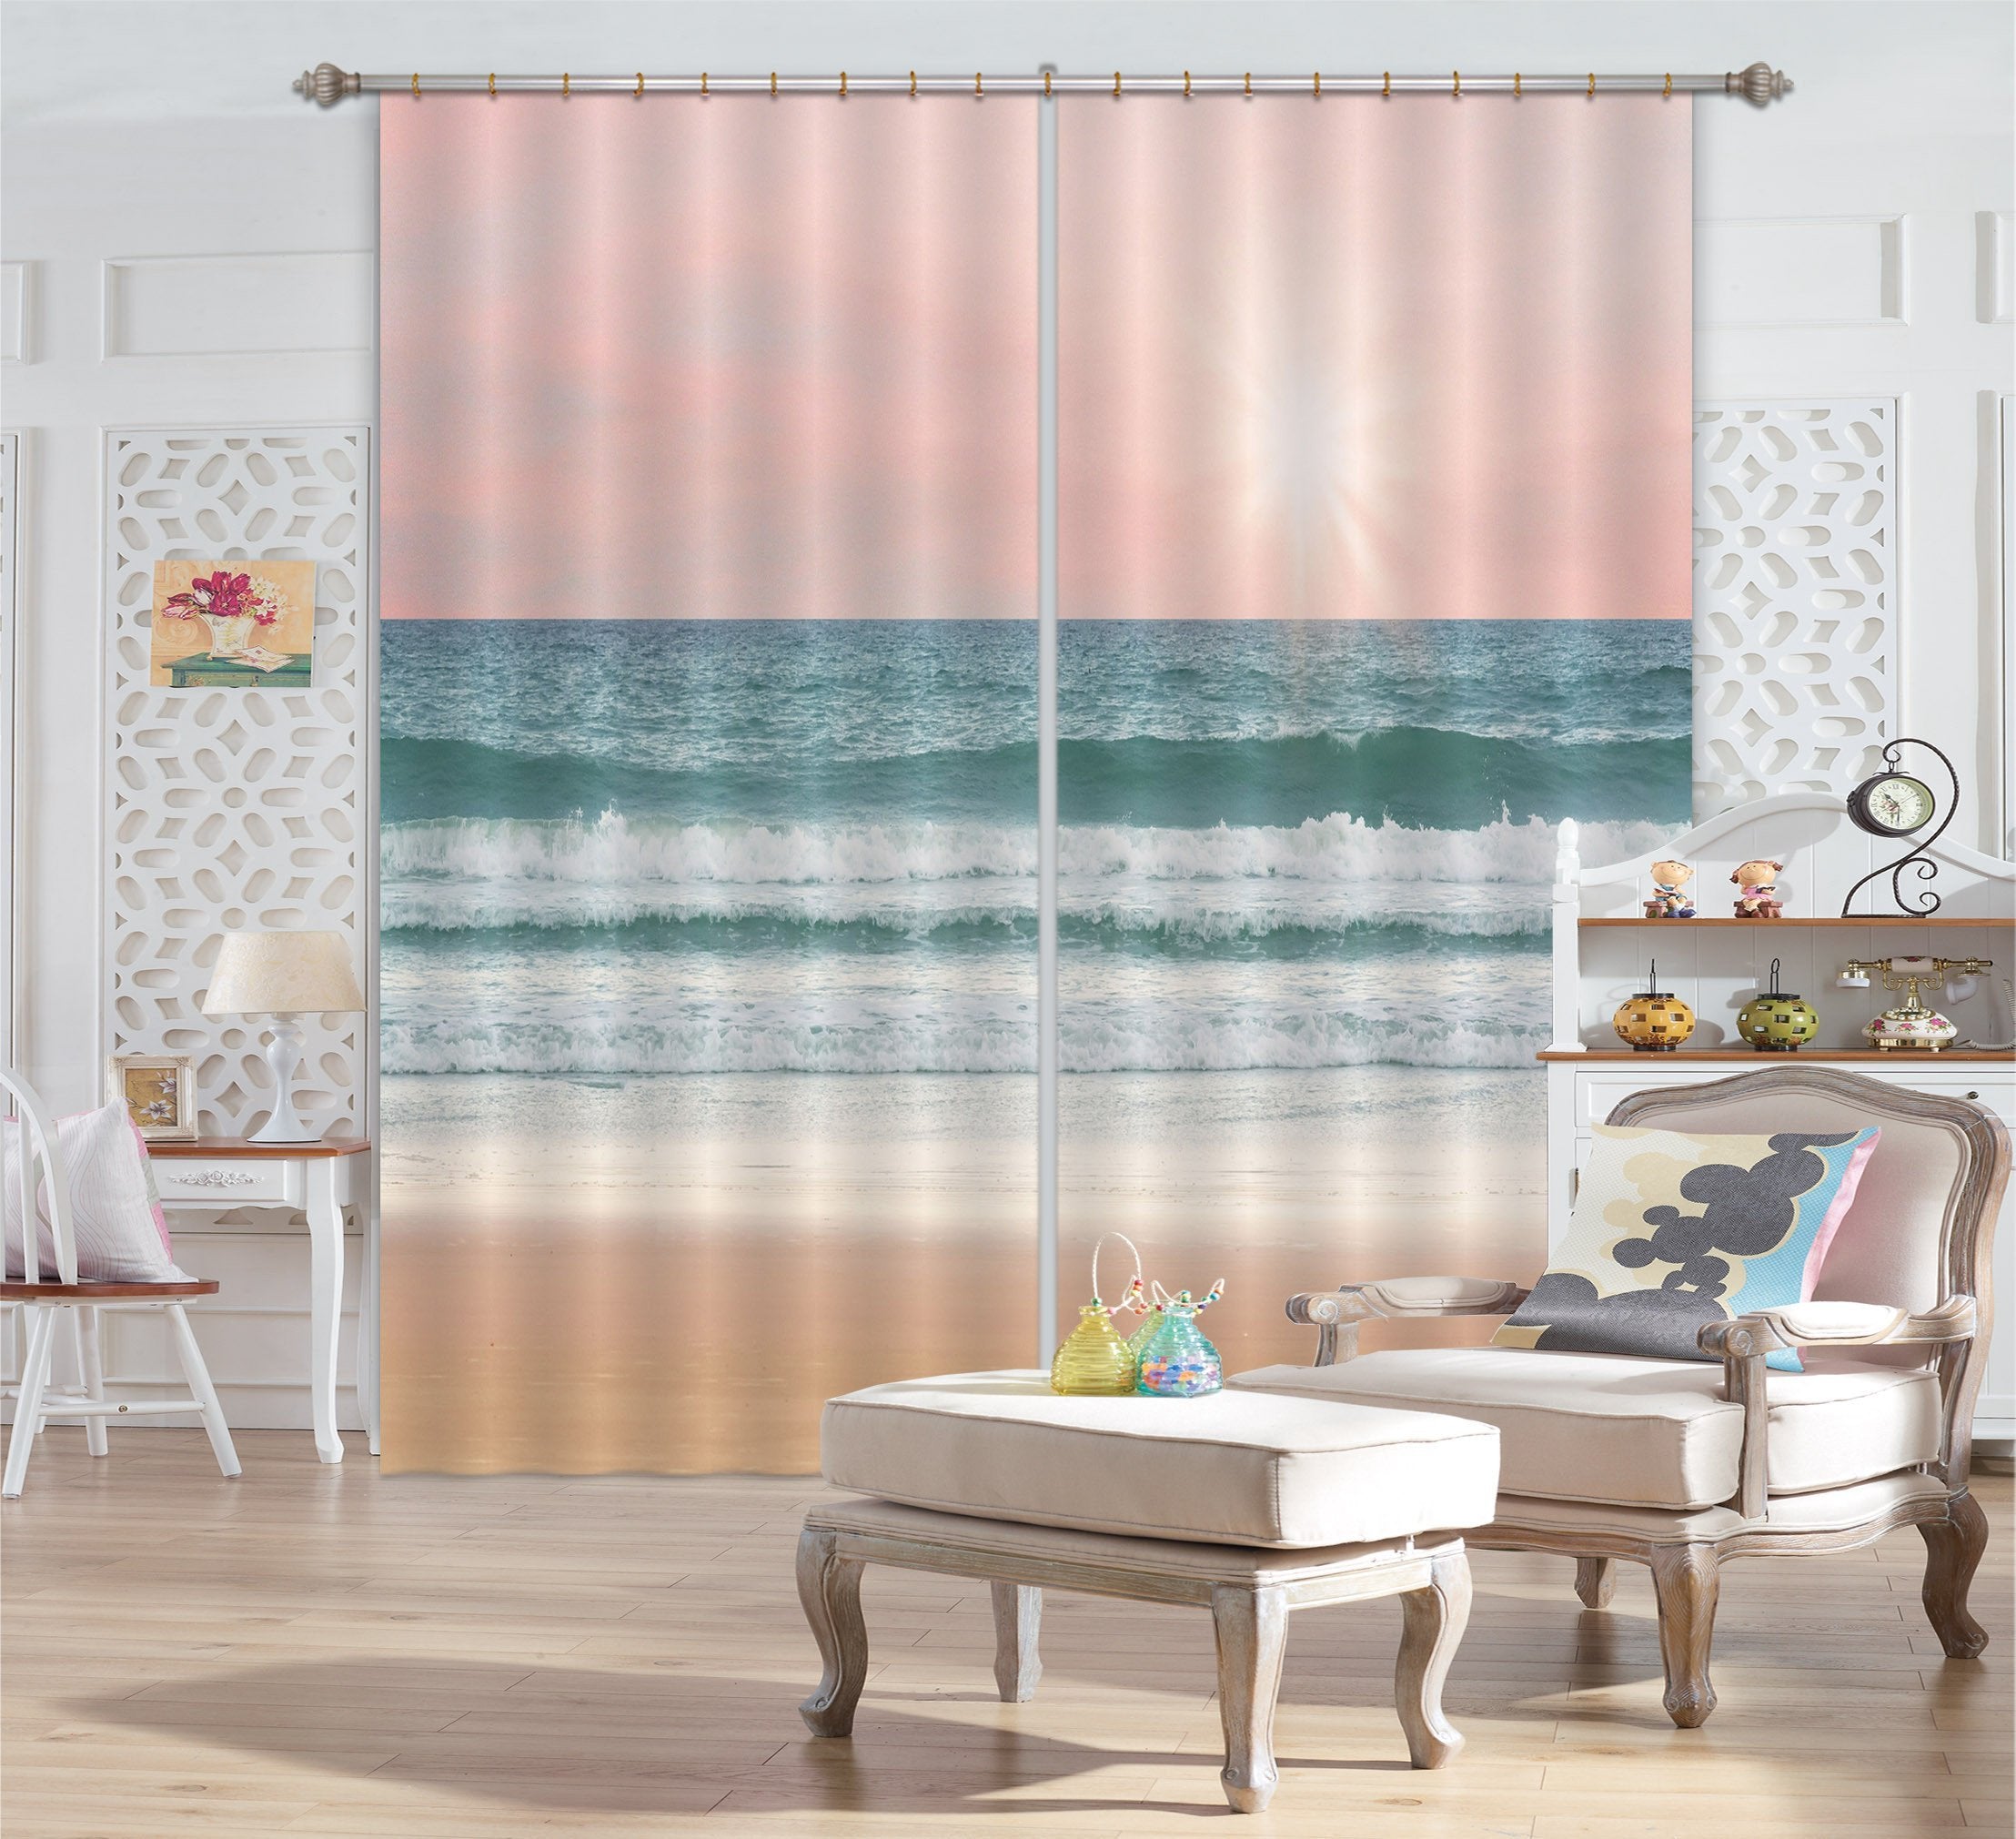 3D Vast Sea 720 Curtains Drapes Wallpaper AJ Wallpaper 